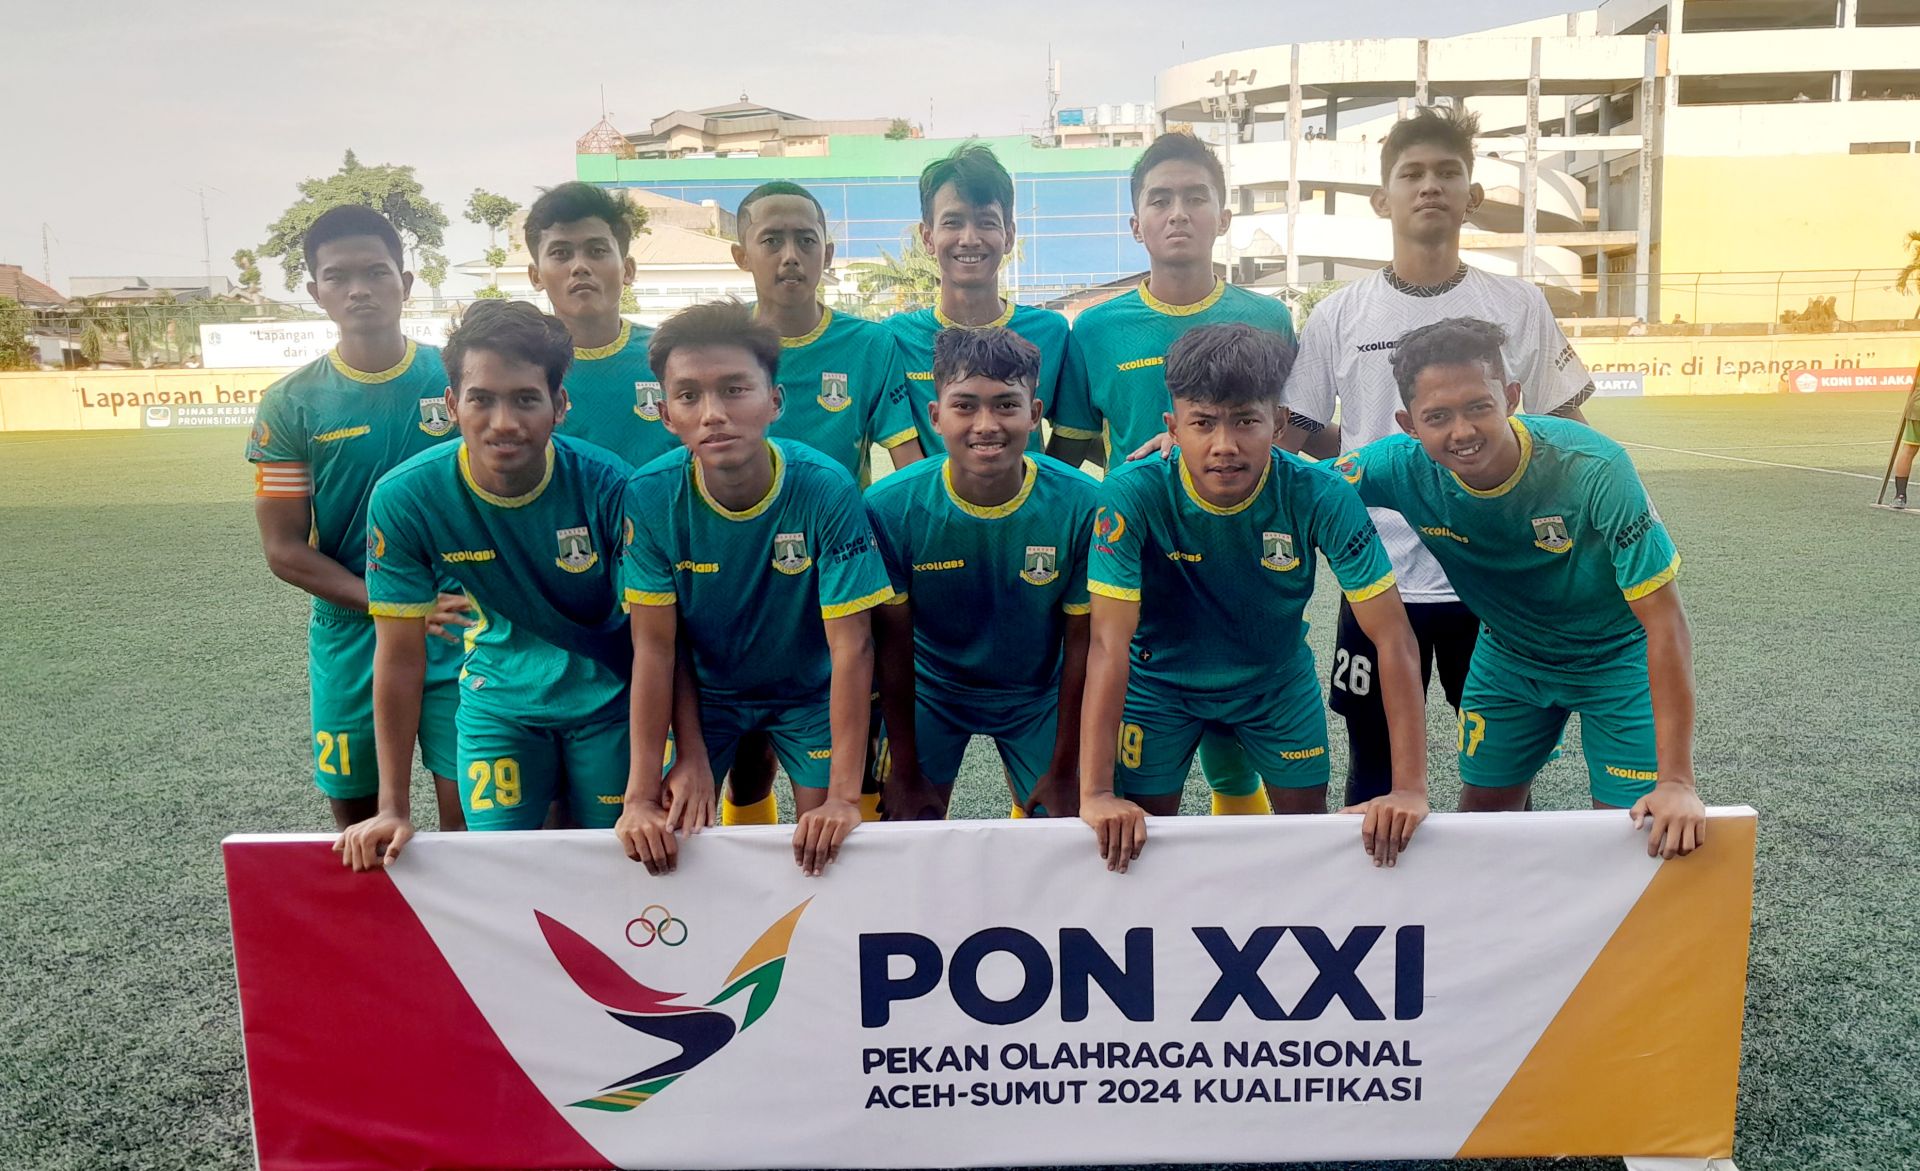 Kualifikasi Sepakbola Pra PON XXI Aceh-Sumut 2024: DKI Jakarta Dilumat Banten 1-4, Jabar Gasak Kalteng 4-1